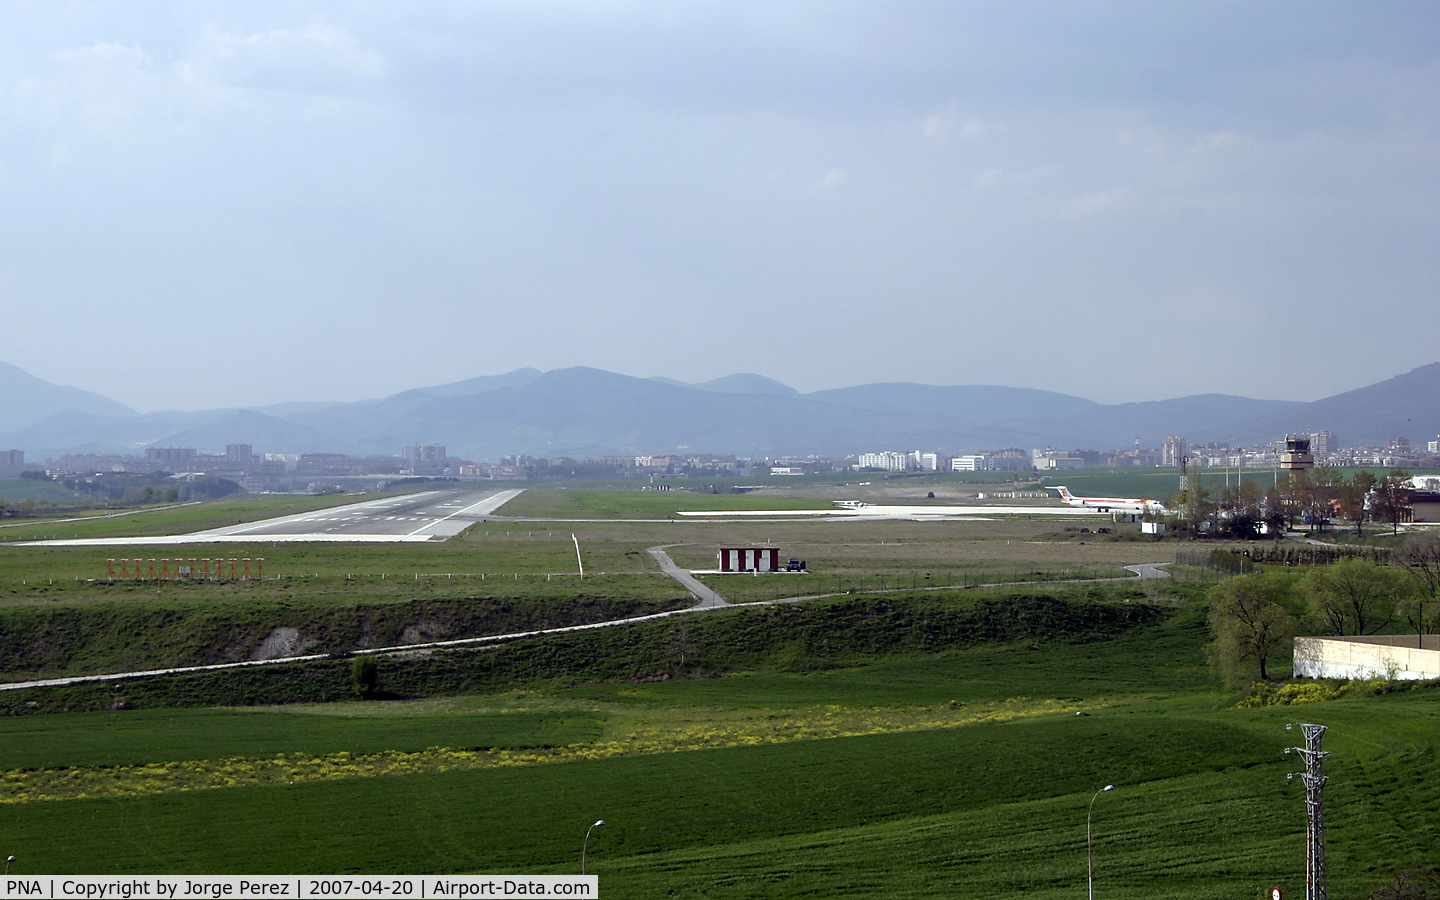 Ralph Wenz Field Airport (PNA) - The airport of Pamplona - Noain (PNA / LEPP)